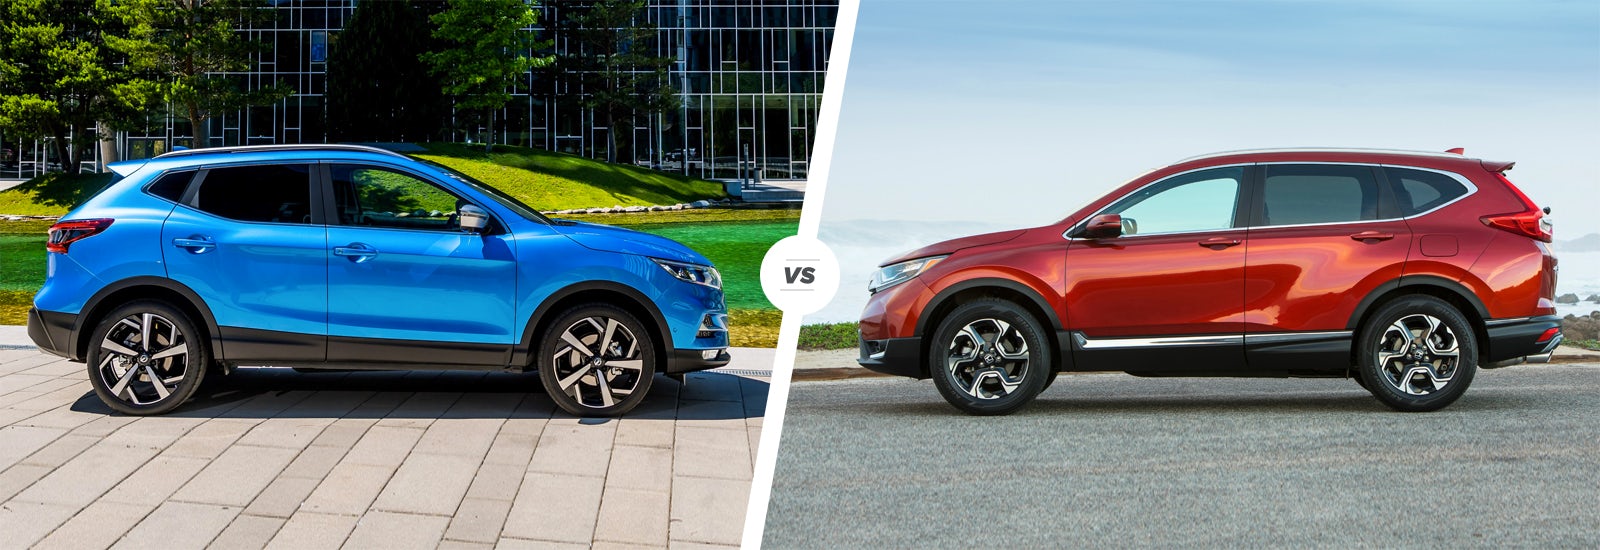 Nissan Qashqai vs Honda CRV which is best? carwow